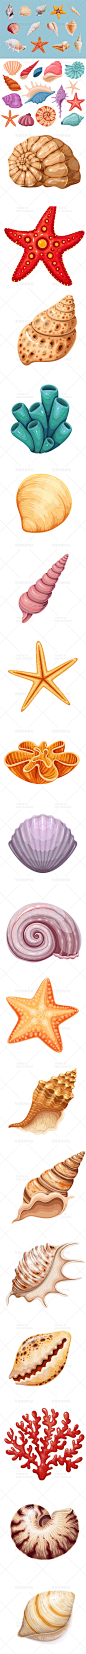 卡通手绘海洋生物贝壳海星海螺珊瑚装饰图标插画AI矢量设计素材-淘宝网